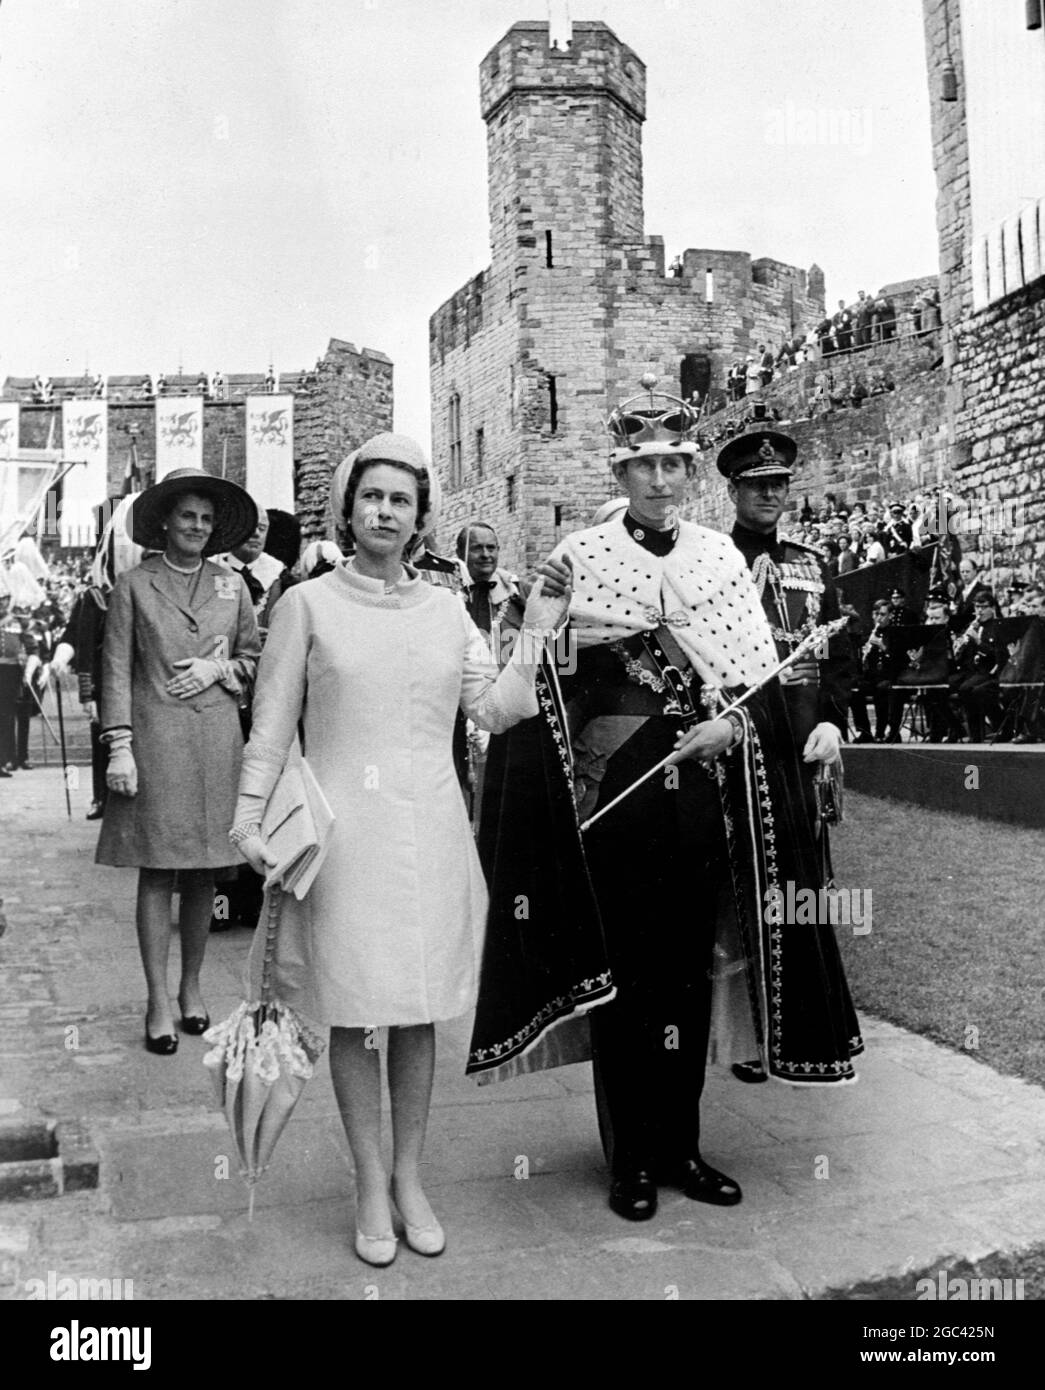 Ihre Majestät Königin Elisabeth II. Lächelt, als sie Prinz Charles in der Hand hält und ihn den Menschen als neuen 21. Prinz von Wales präsentiert. Sie werden nach der Investiturzeremonie gesehen, bei der Prinz Charles den gesamten Mantel der Royal Regalia und Ermine über seiner Militäruniform des 1. Bataillons des Royal Regiment of Wales trägt. Juli 1969 Stockfoto